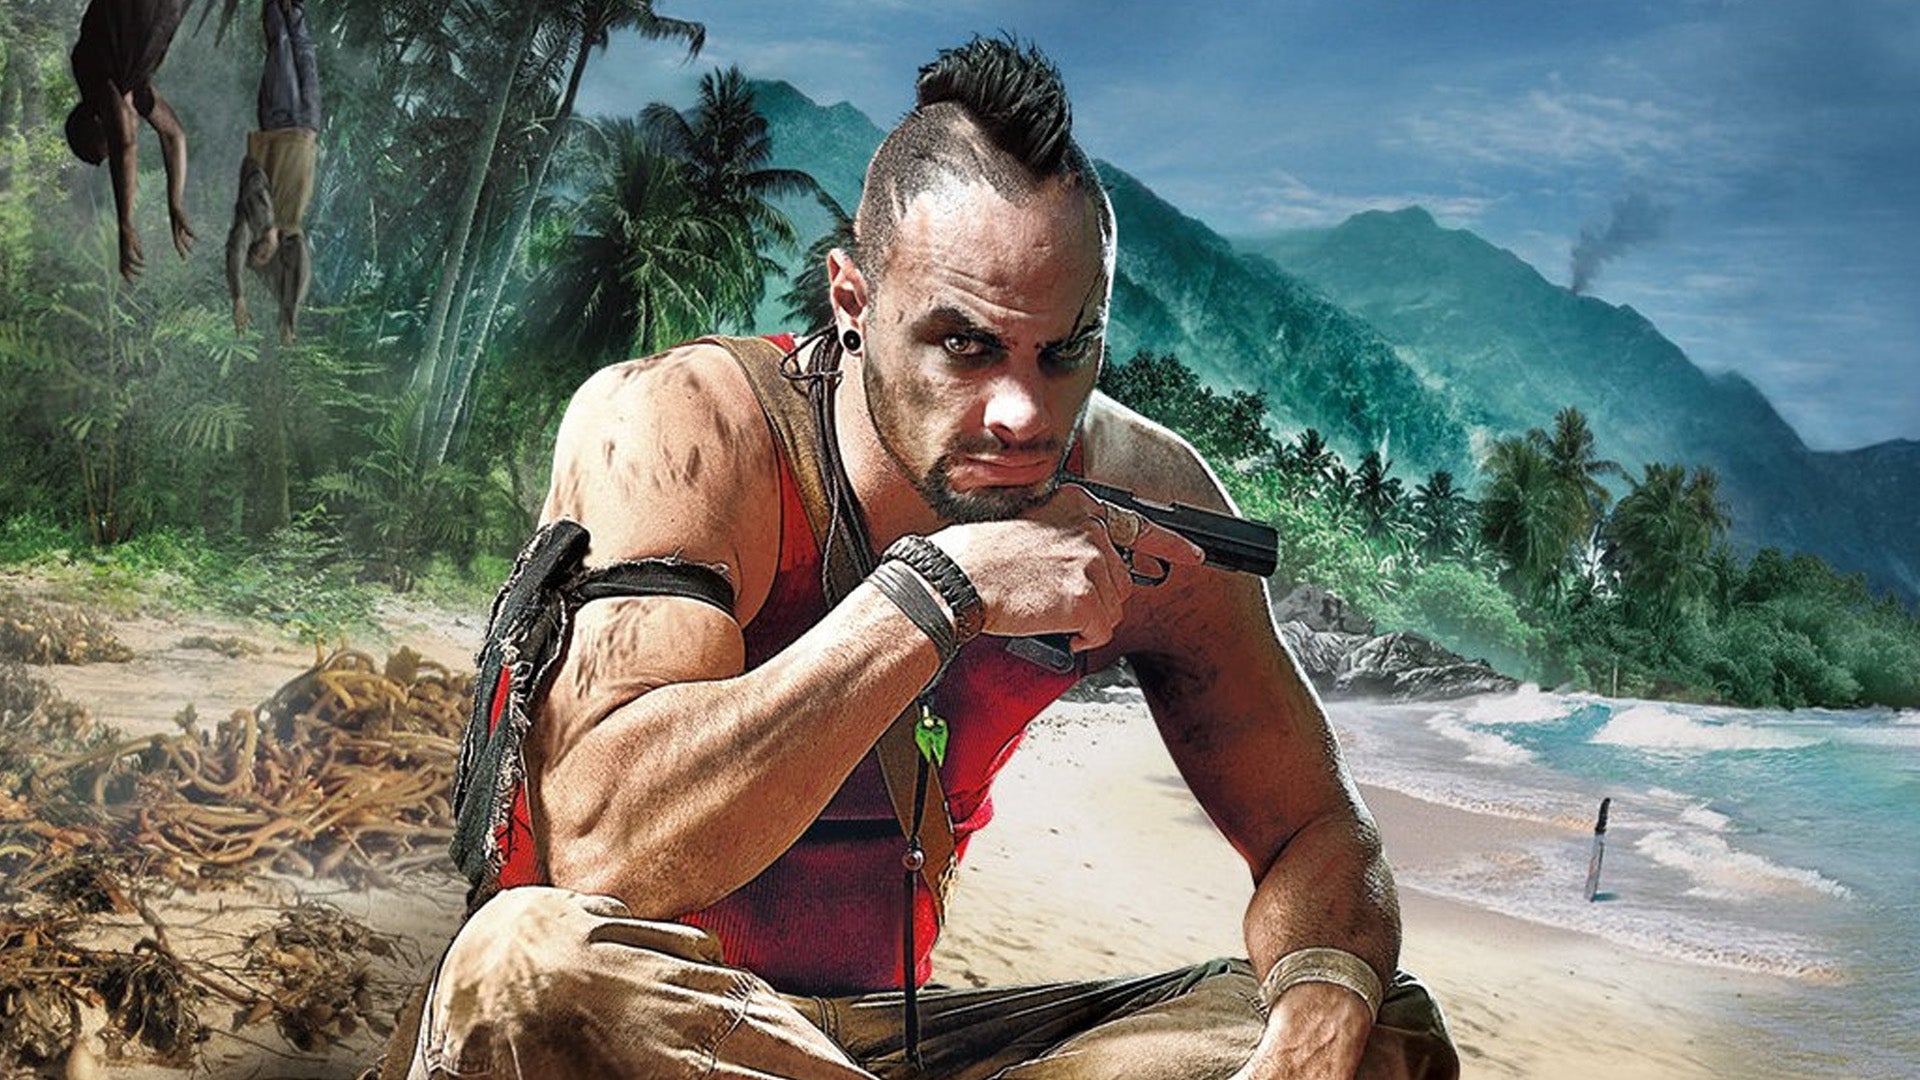 Obrazki dla Prawdziwy Vaas przyznaje, że nigdy nie grał w Far Cry 3. Ujawnia też ciekawostki o roli